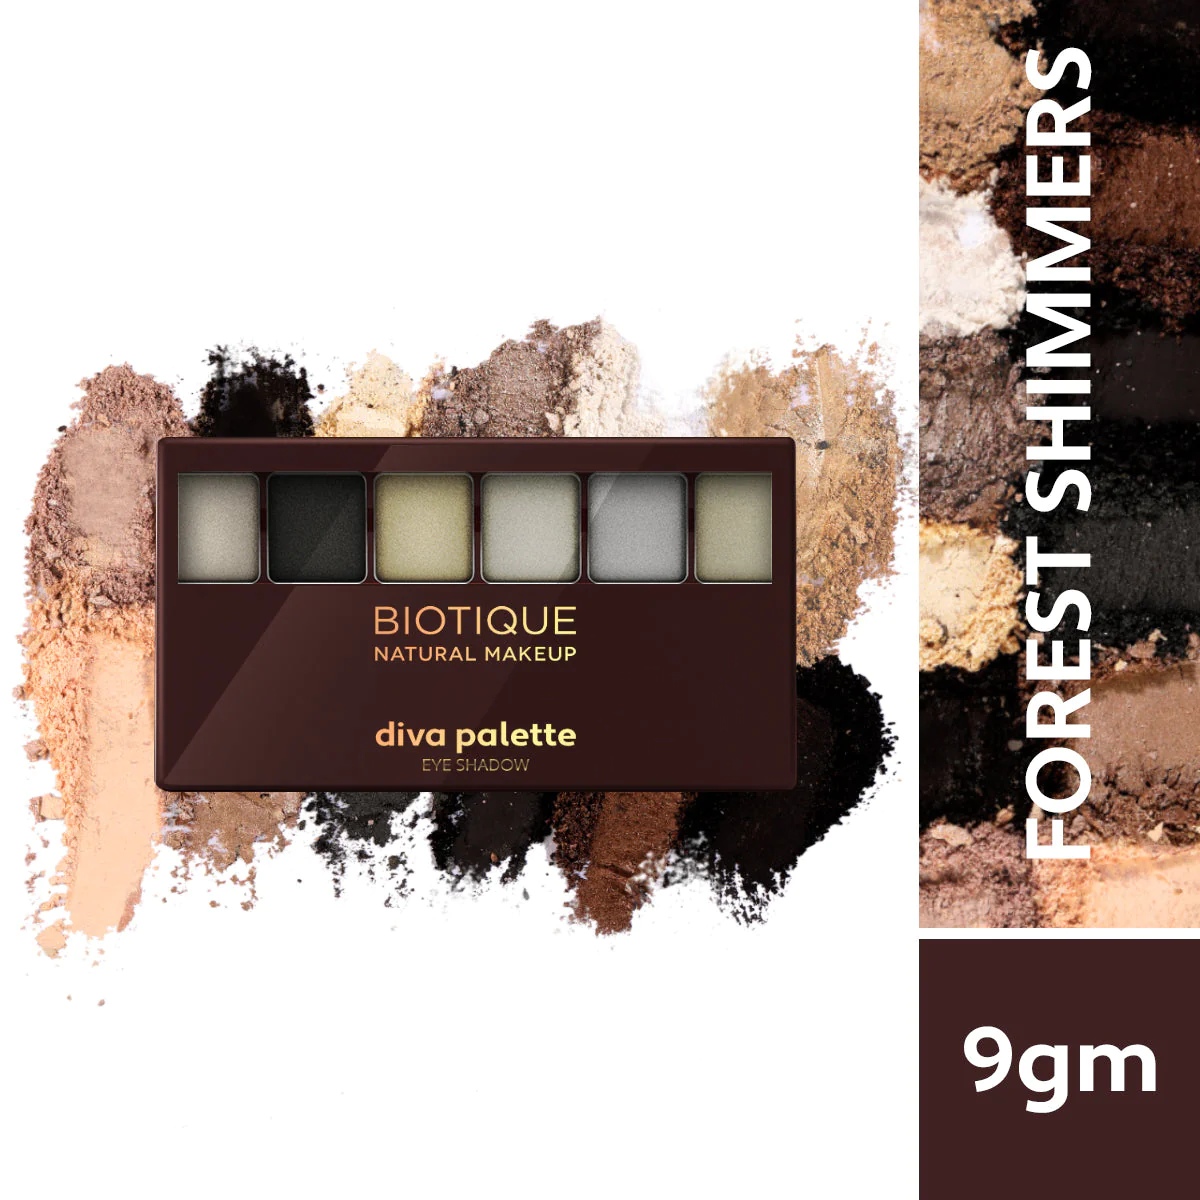 Biotique Natural Makeup Diva Palette Eye Shadow, Forest Shimmers, 12g